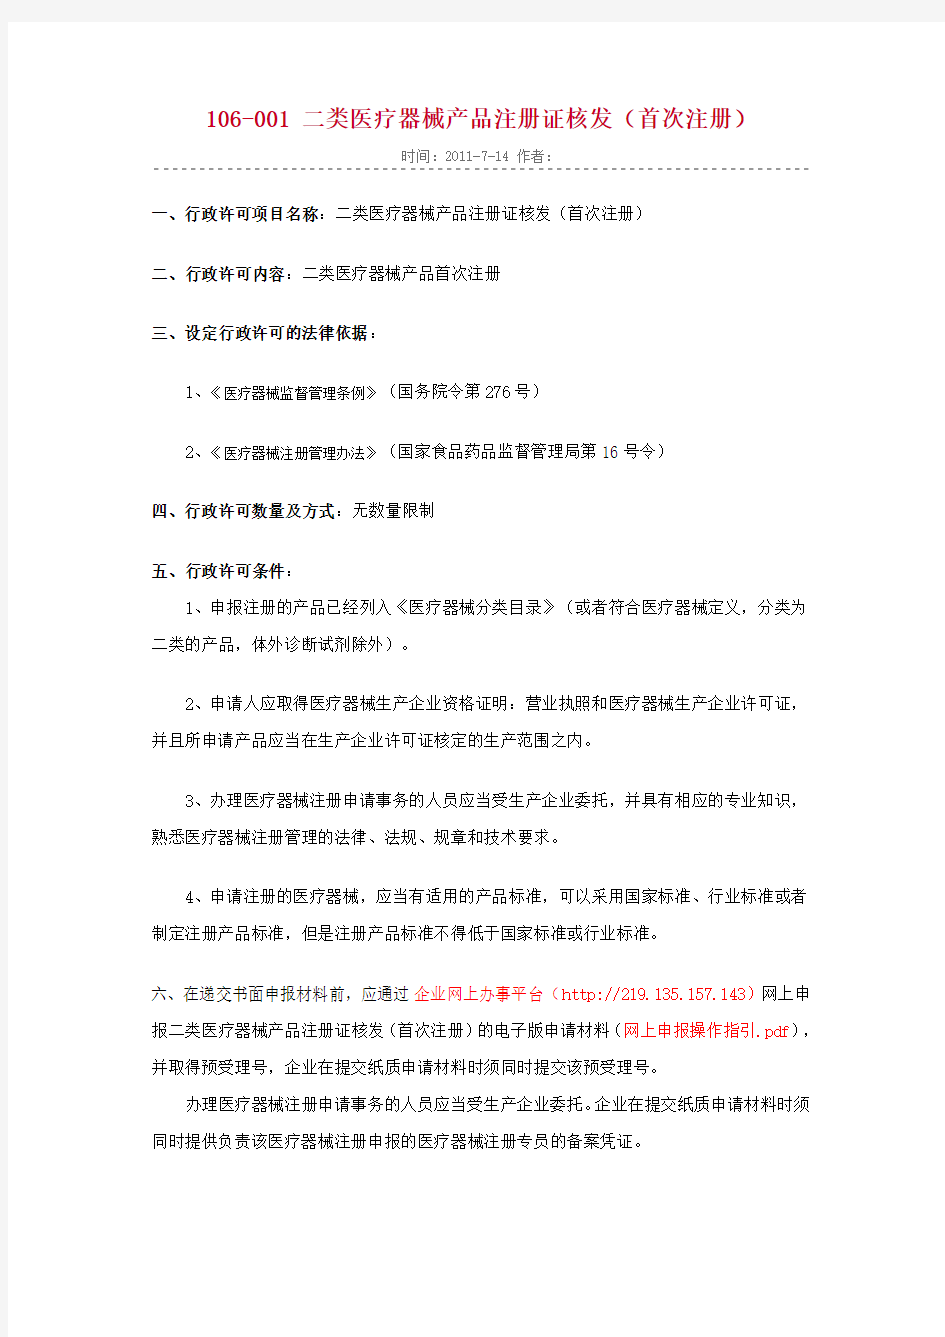 广东省二类医疗器械注册行政许可规定